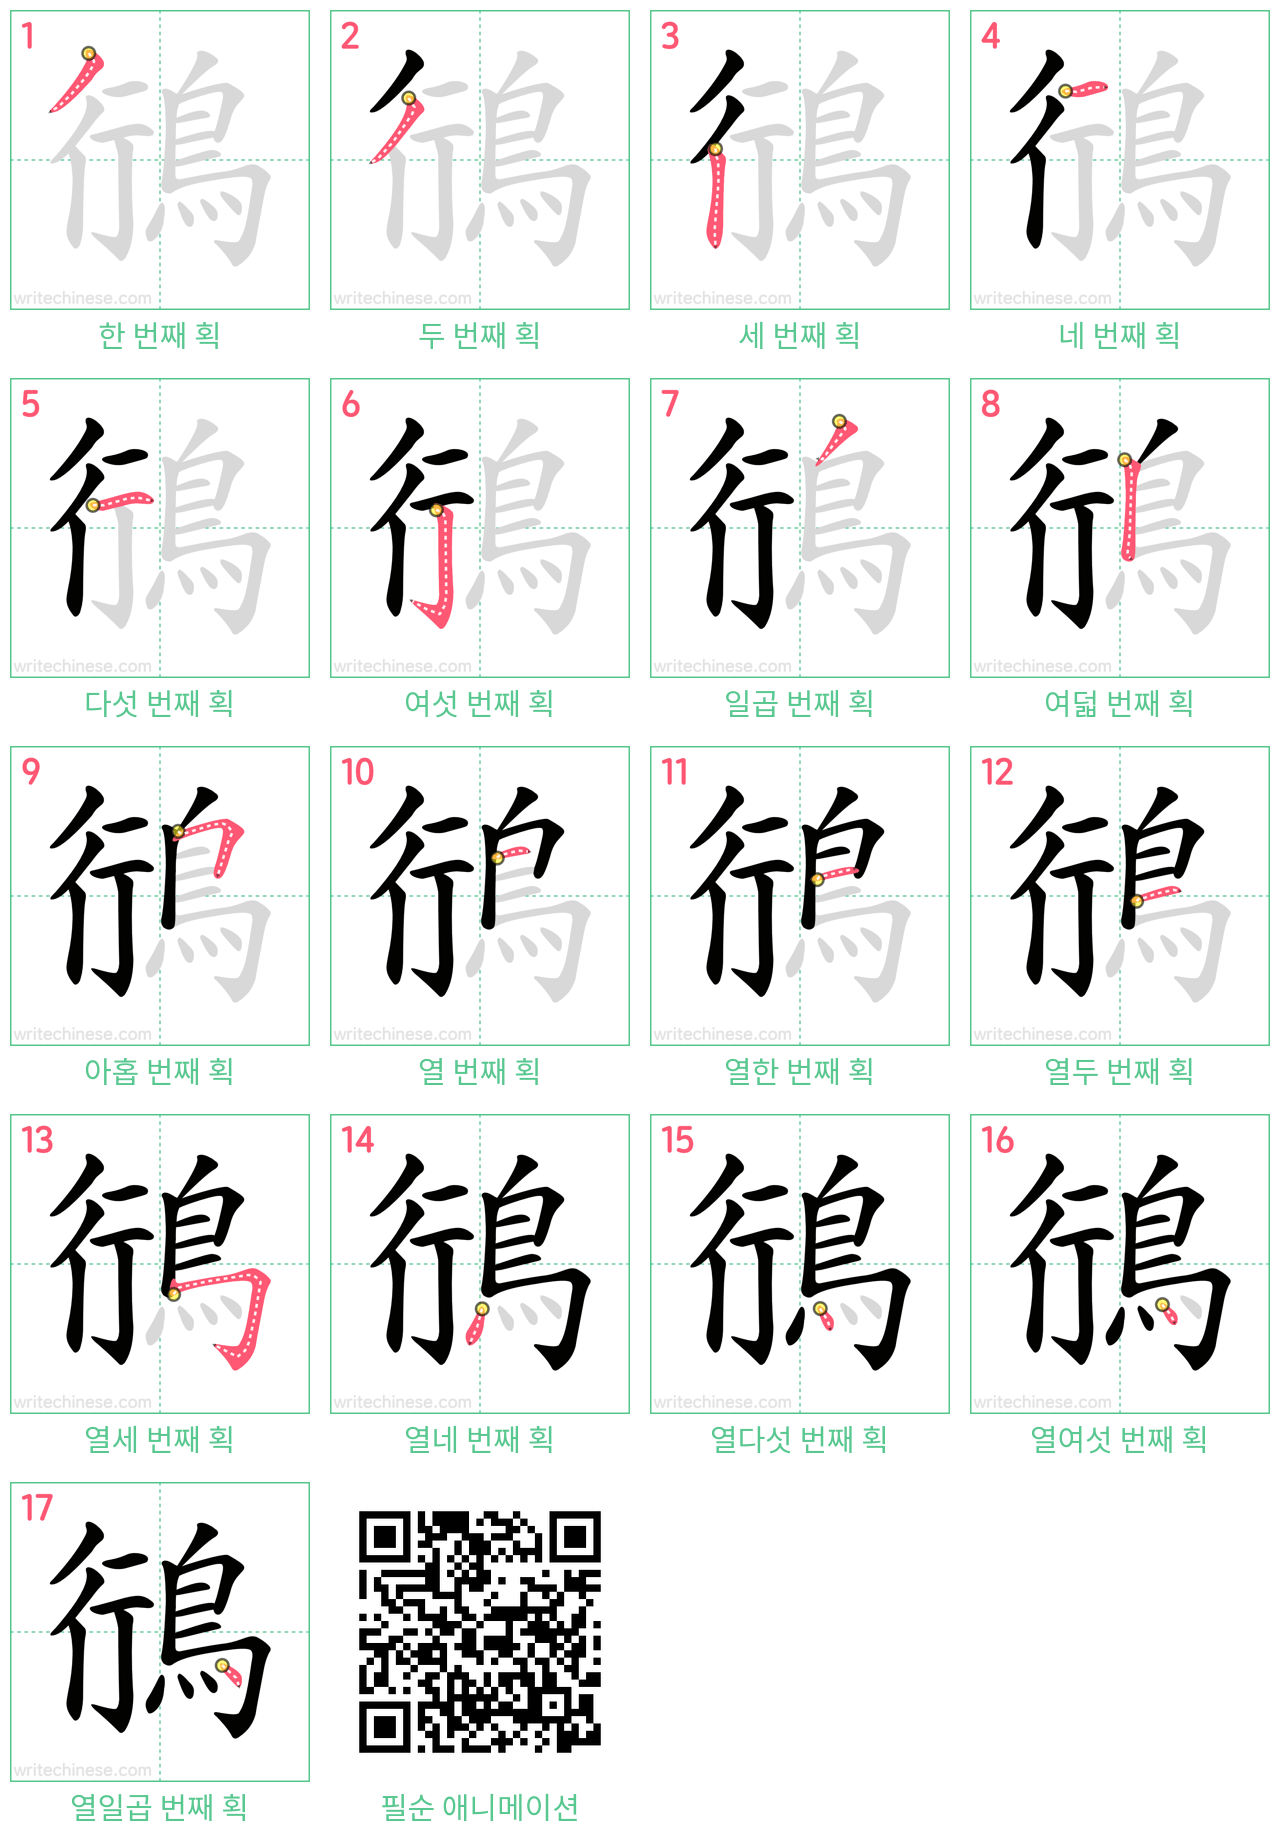 鴴 step-by-step stroke order diagrams